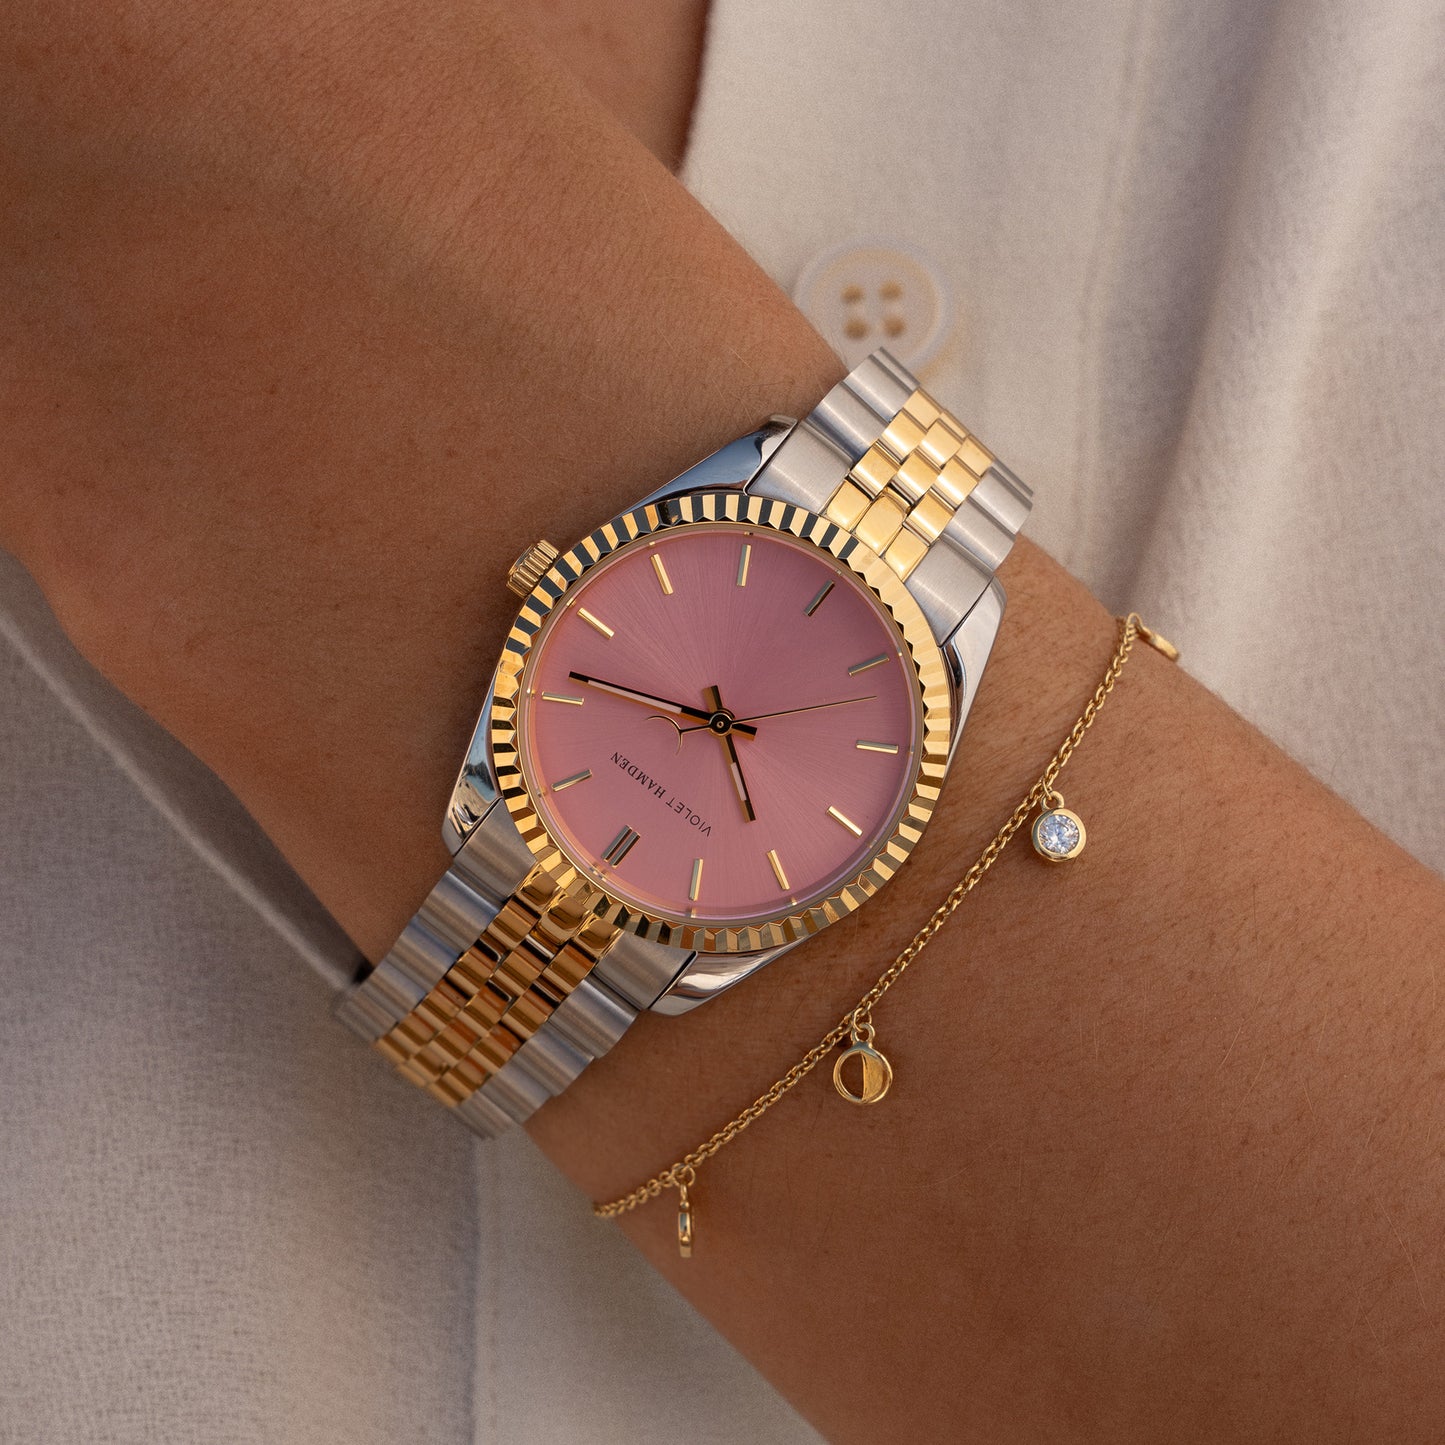 Sunrise orologio da donna rotondo color argento e oro e rosa